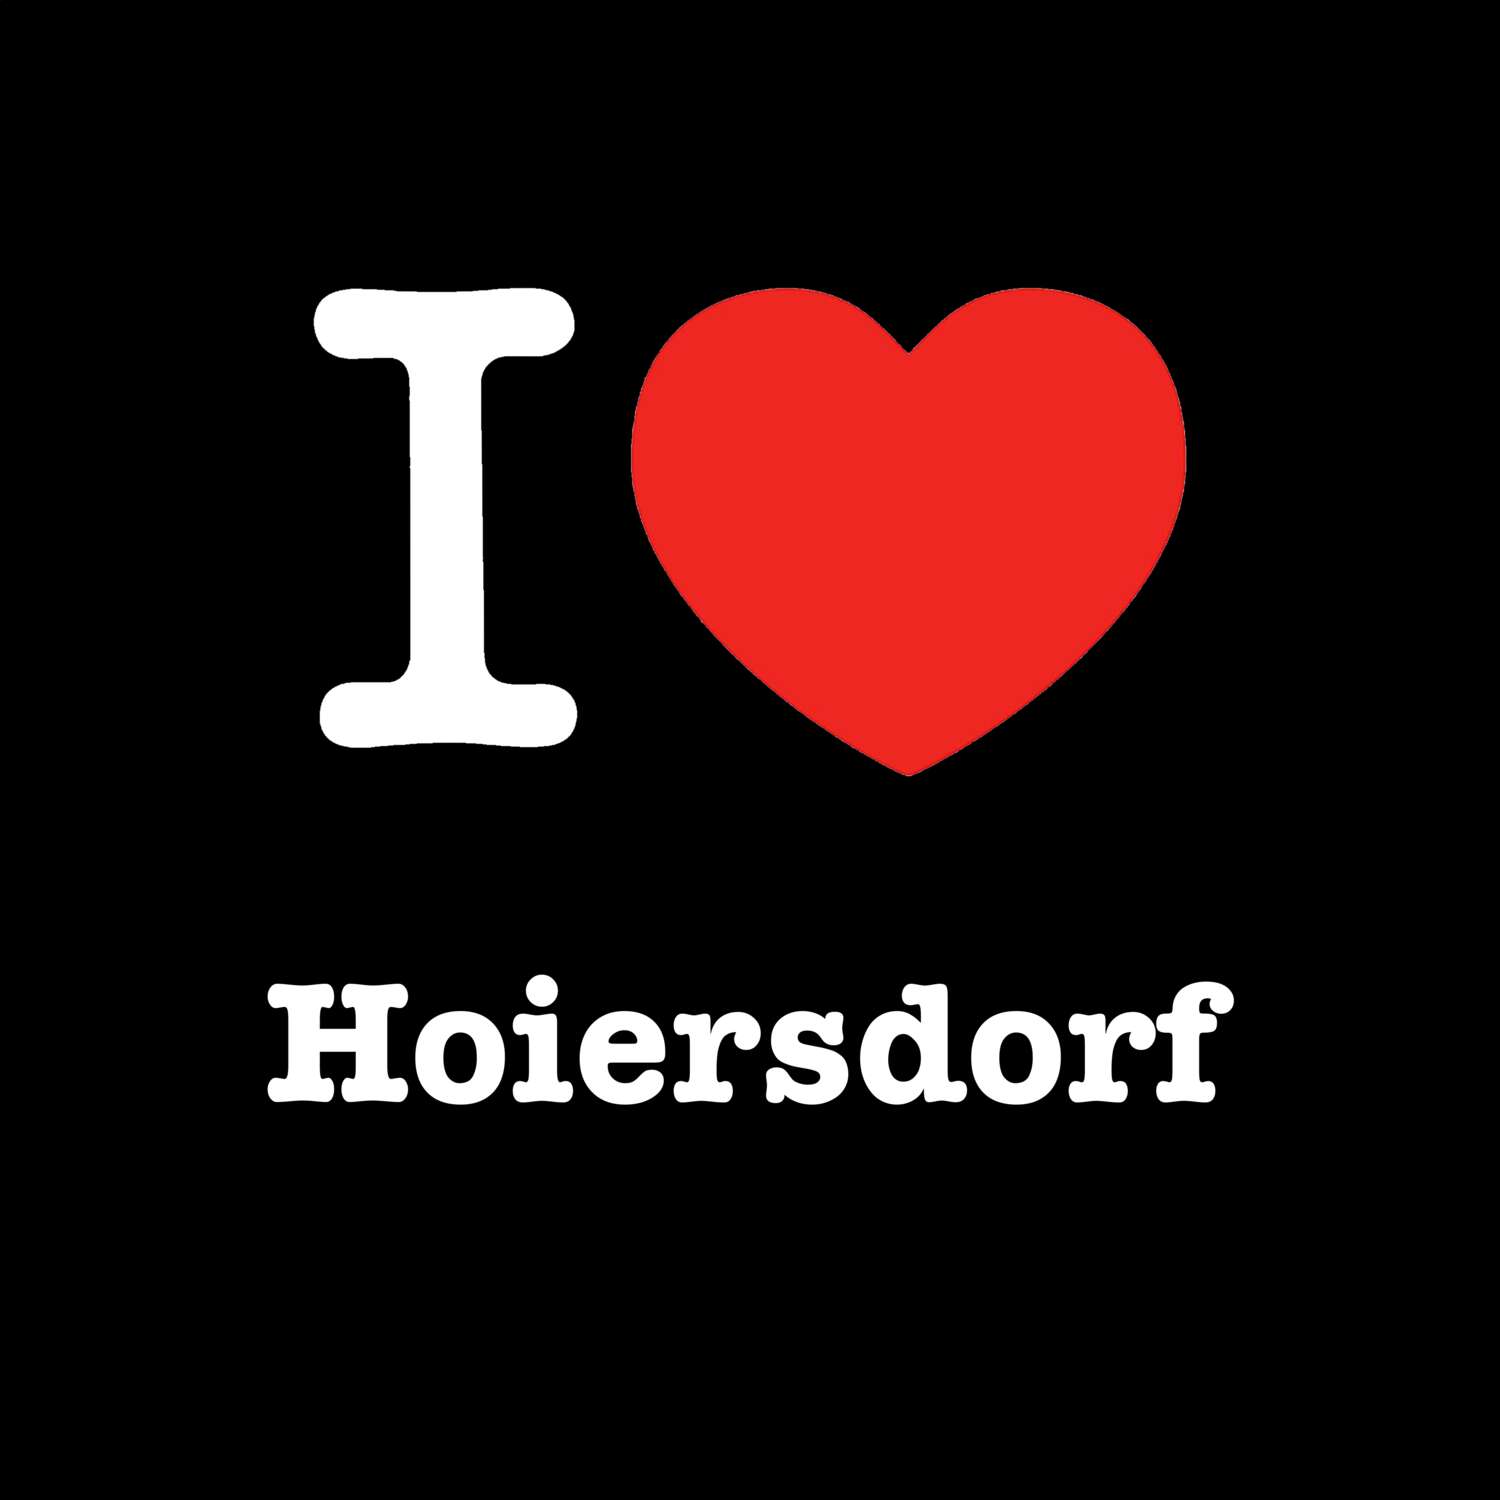 Hoiersdorf T-Shirt »I love«